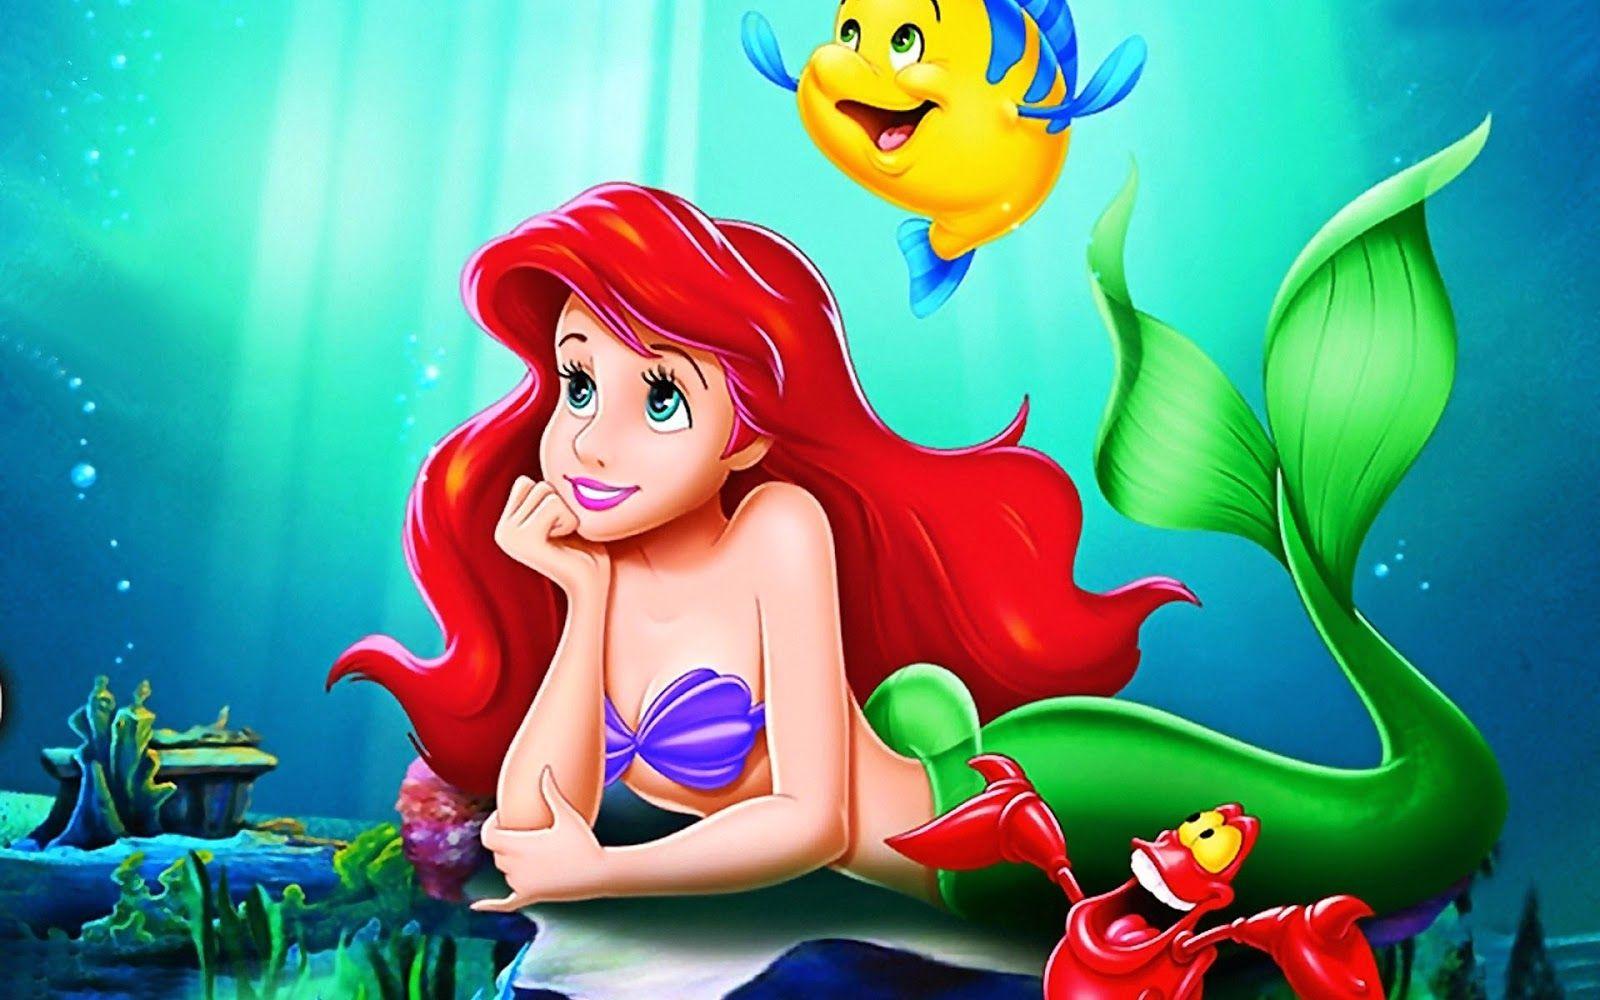 Cartoon Mermaid Wallpapers - Top Free Cartoon Mermaid Backgrounds